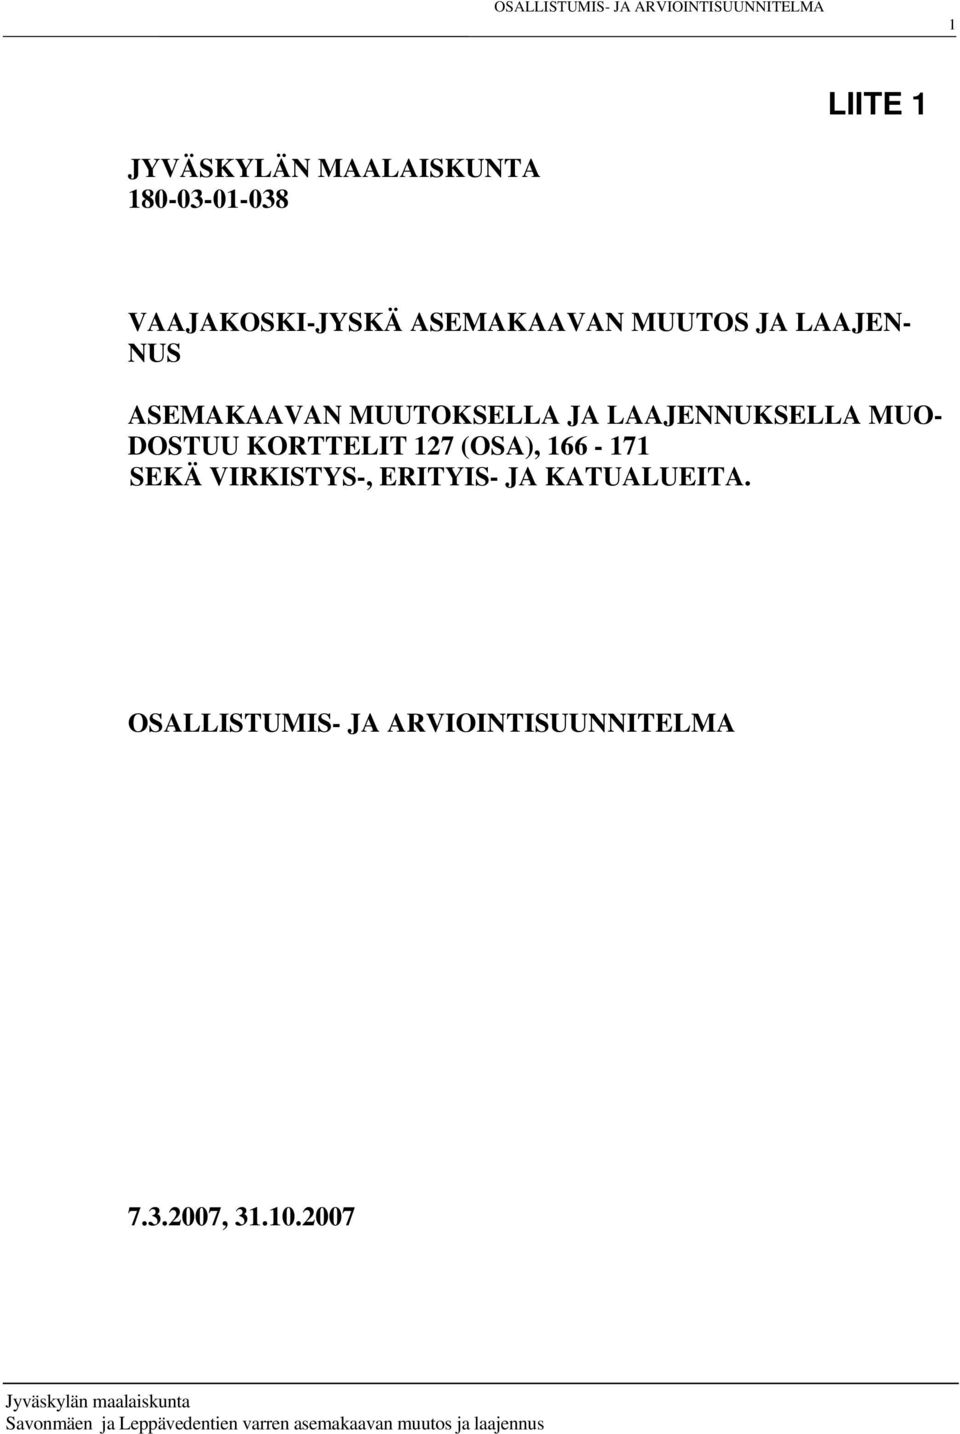 LAAJENNUKSELLA MUO- DOSTUU KORTTELIT 127 (OSA), 166-171 SEKÄ